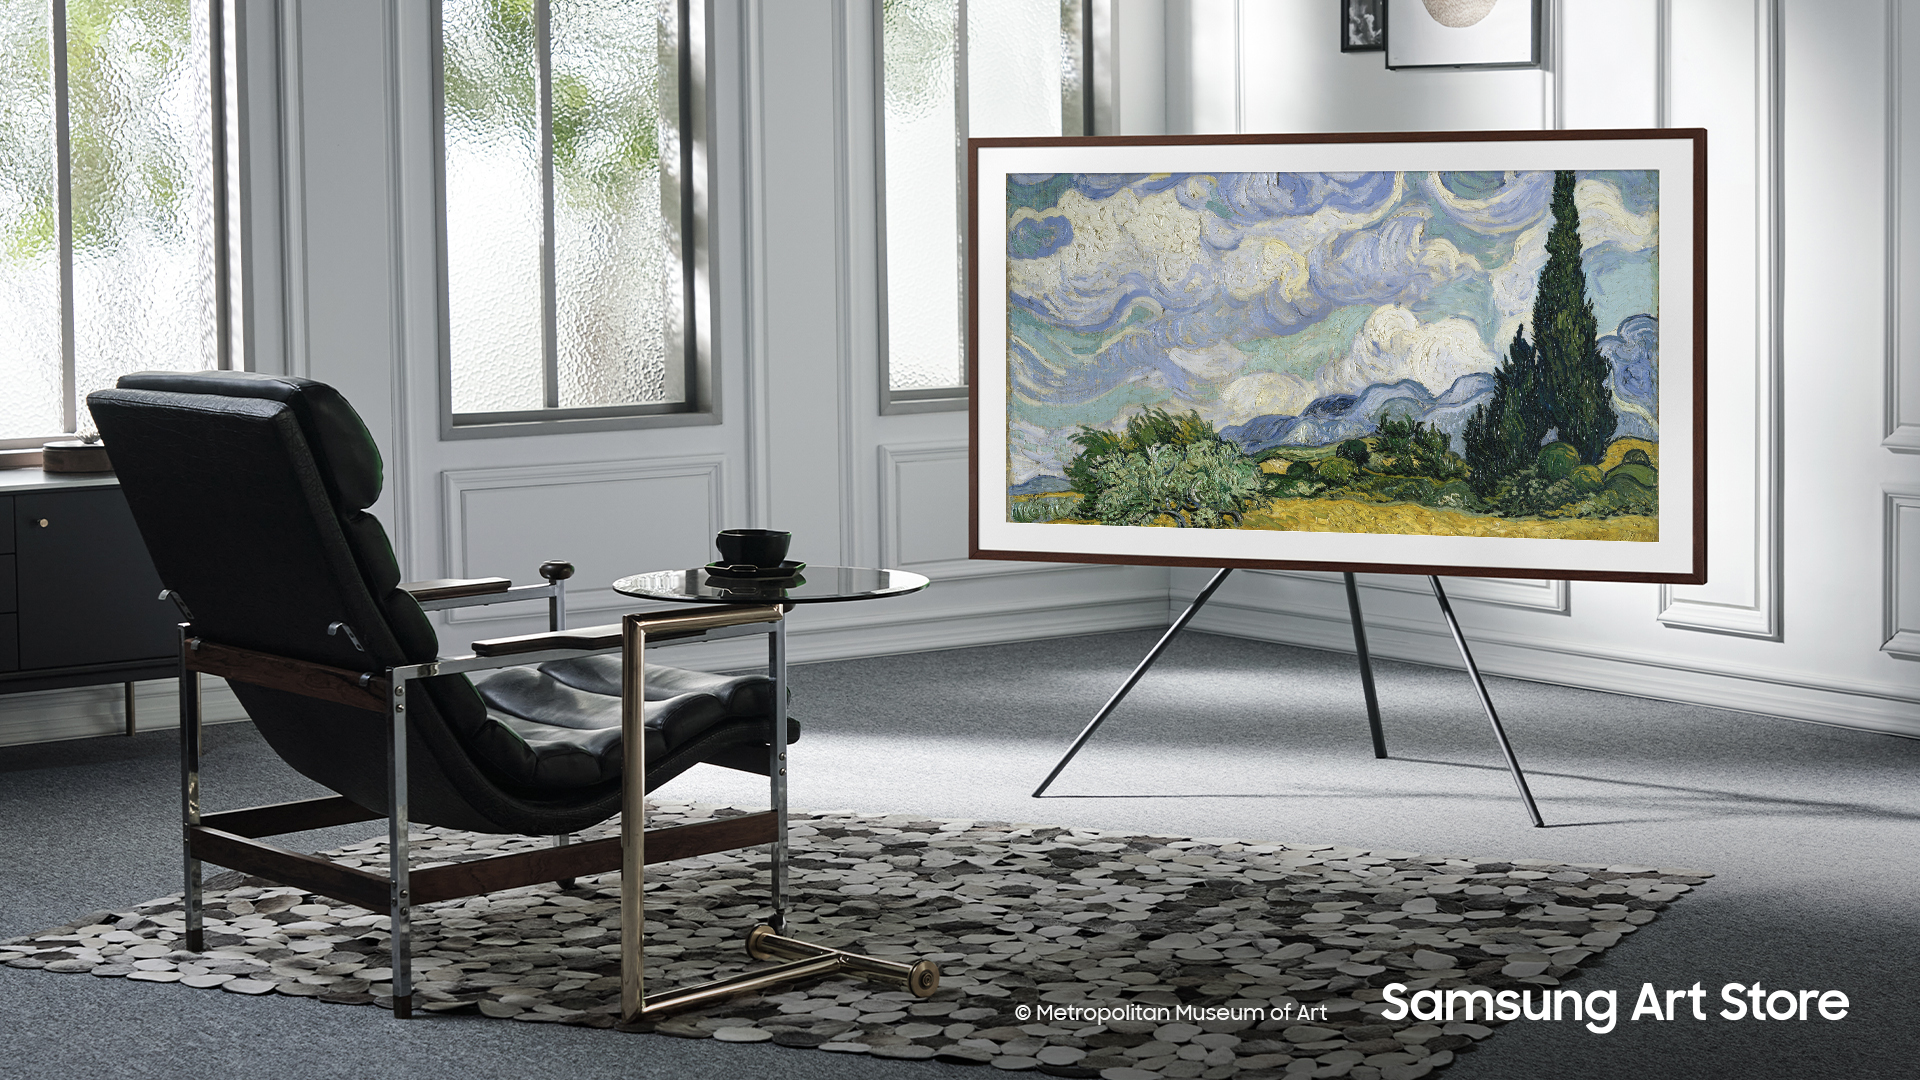 Samsung, Metropolitan Sanat Müzesi iş birliğiyle dünyaca ünlü sanat eserlerini The Frame TV’ye getiriyor